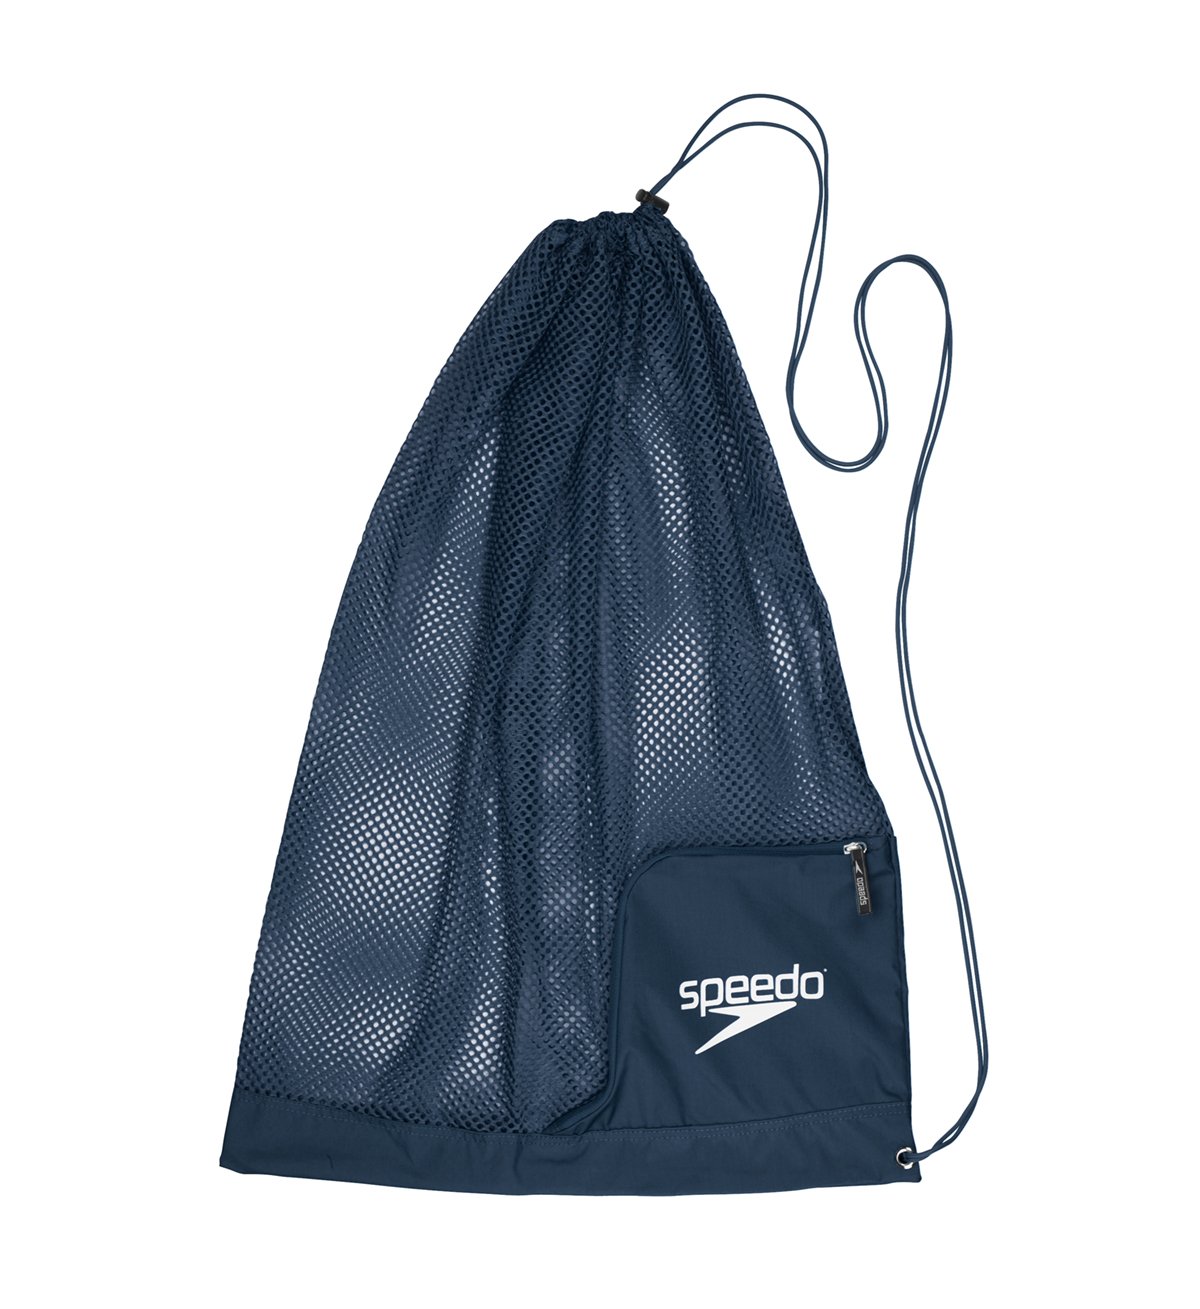 Speedo Deluxe Ventilator Mesh Bag Prism Violet 1SZ Speedo Swim Equipment 7520118 